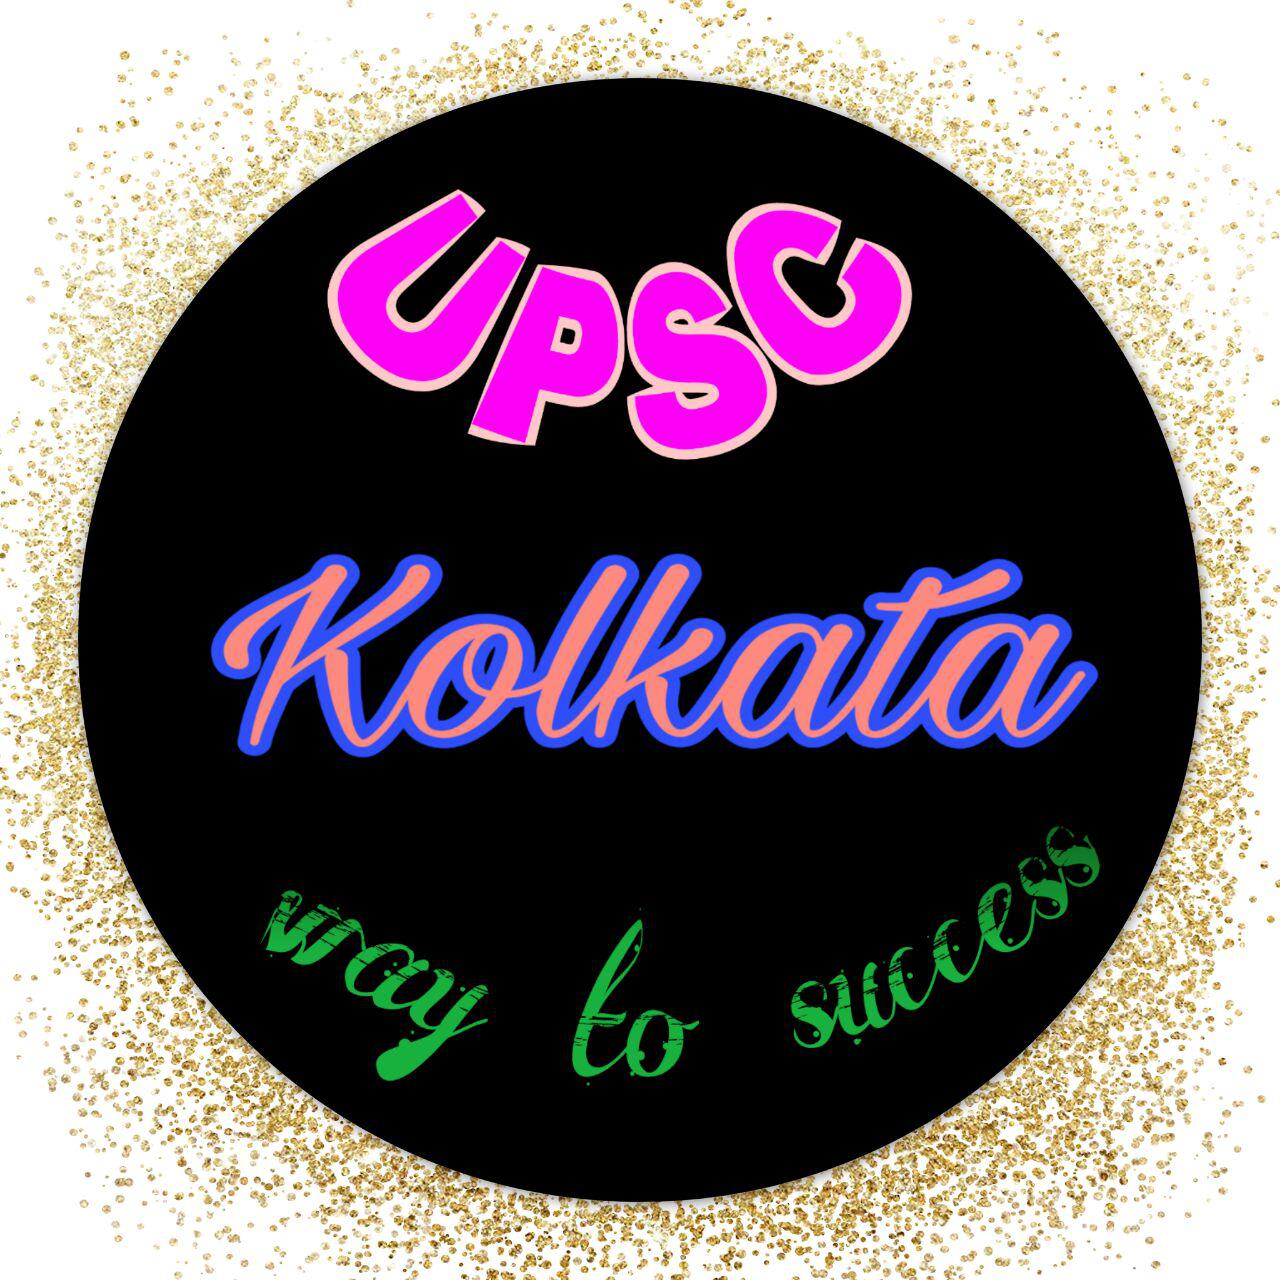 UPSC Kolkata